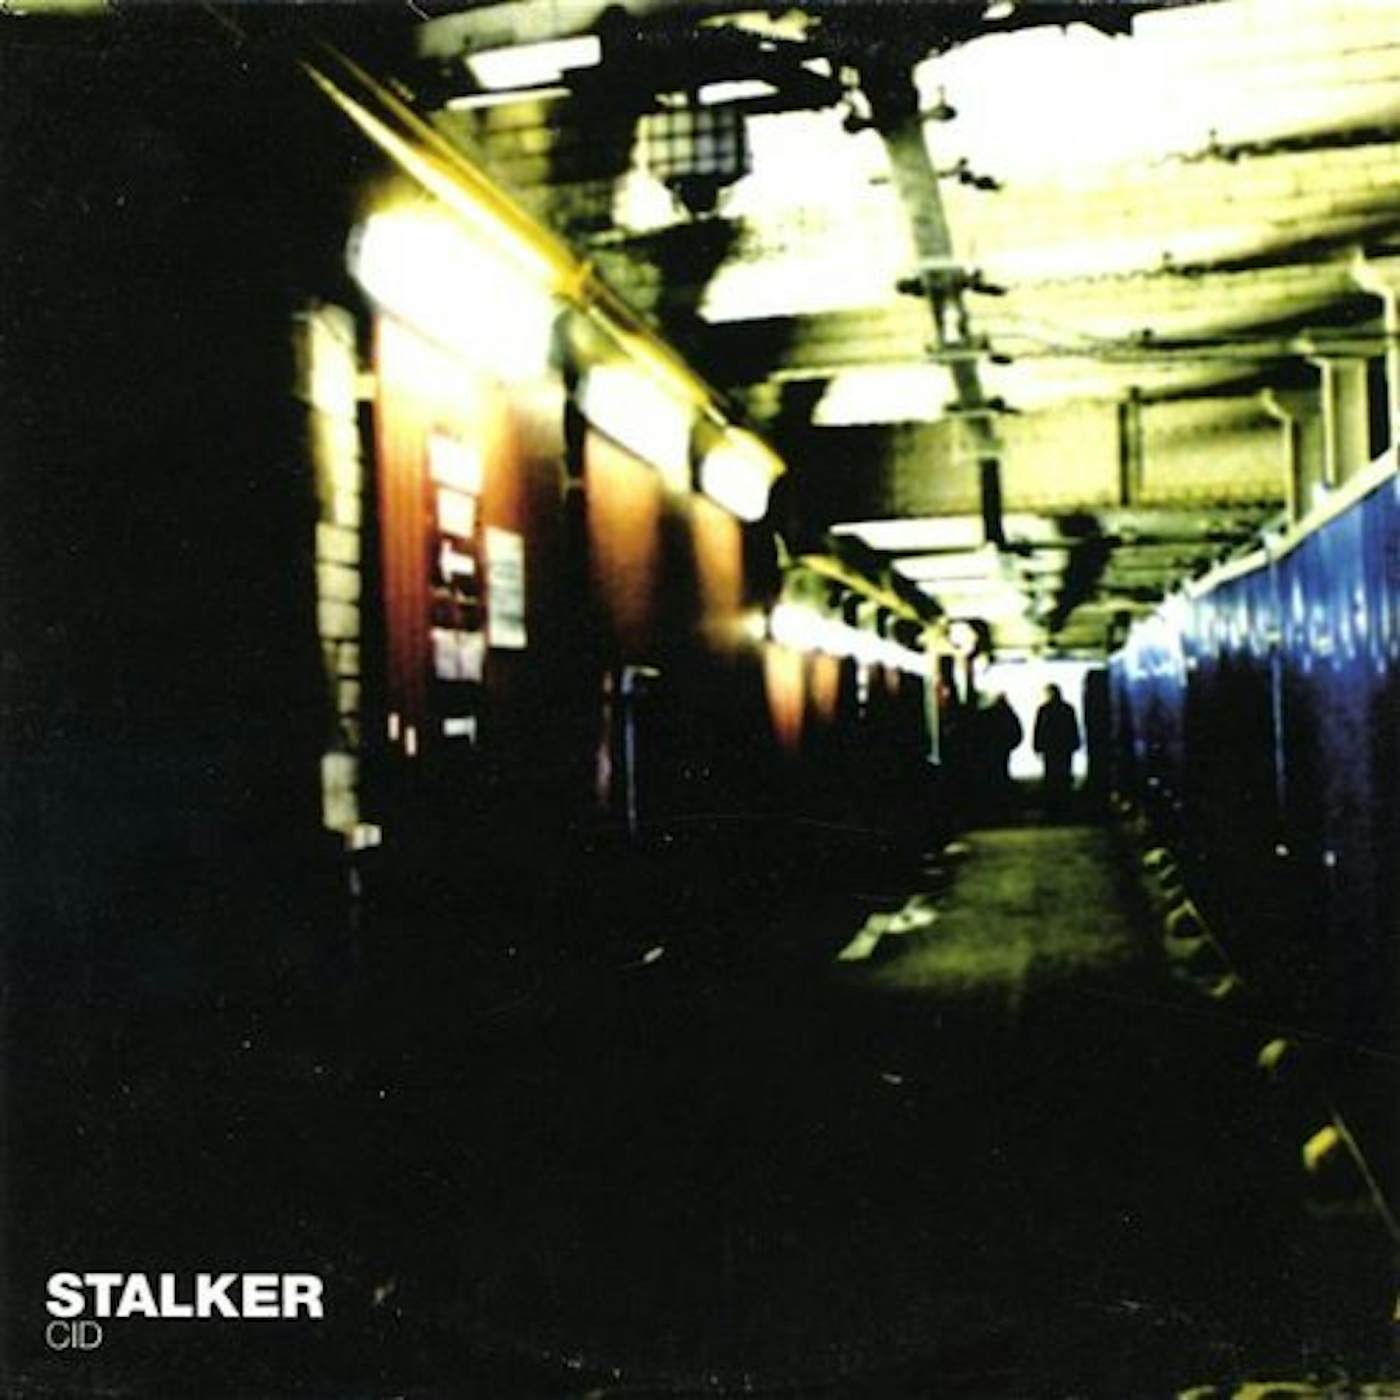 Stalker CID CD